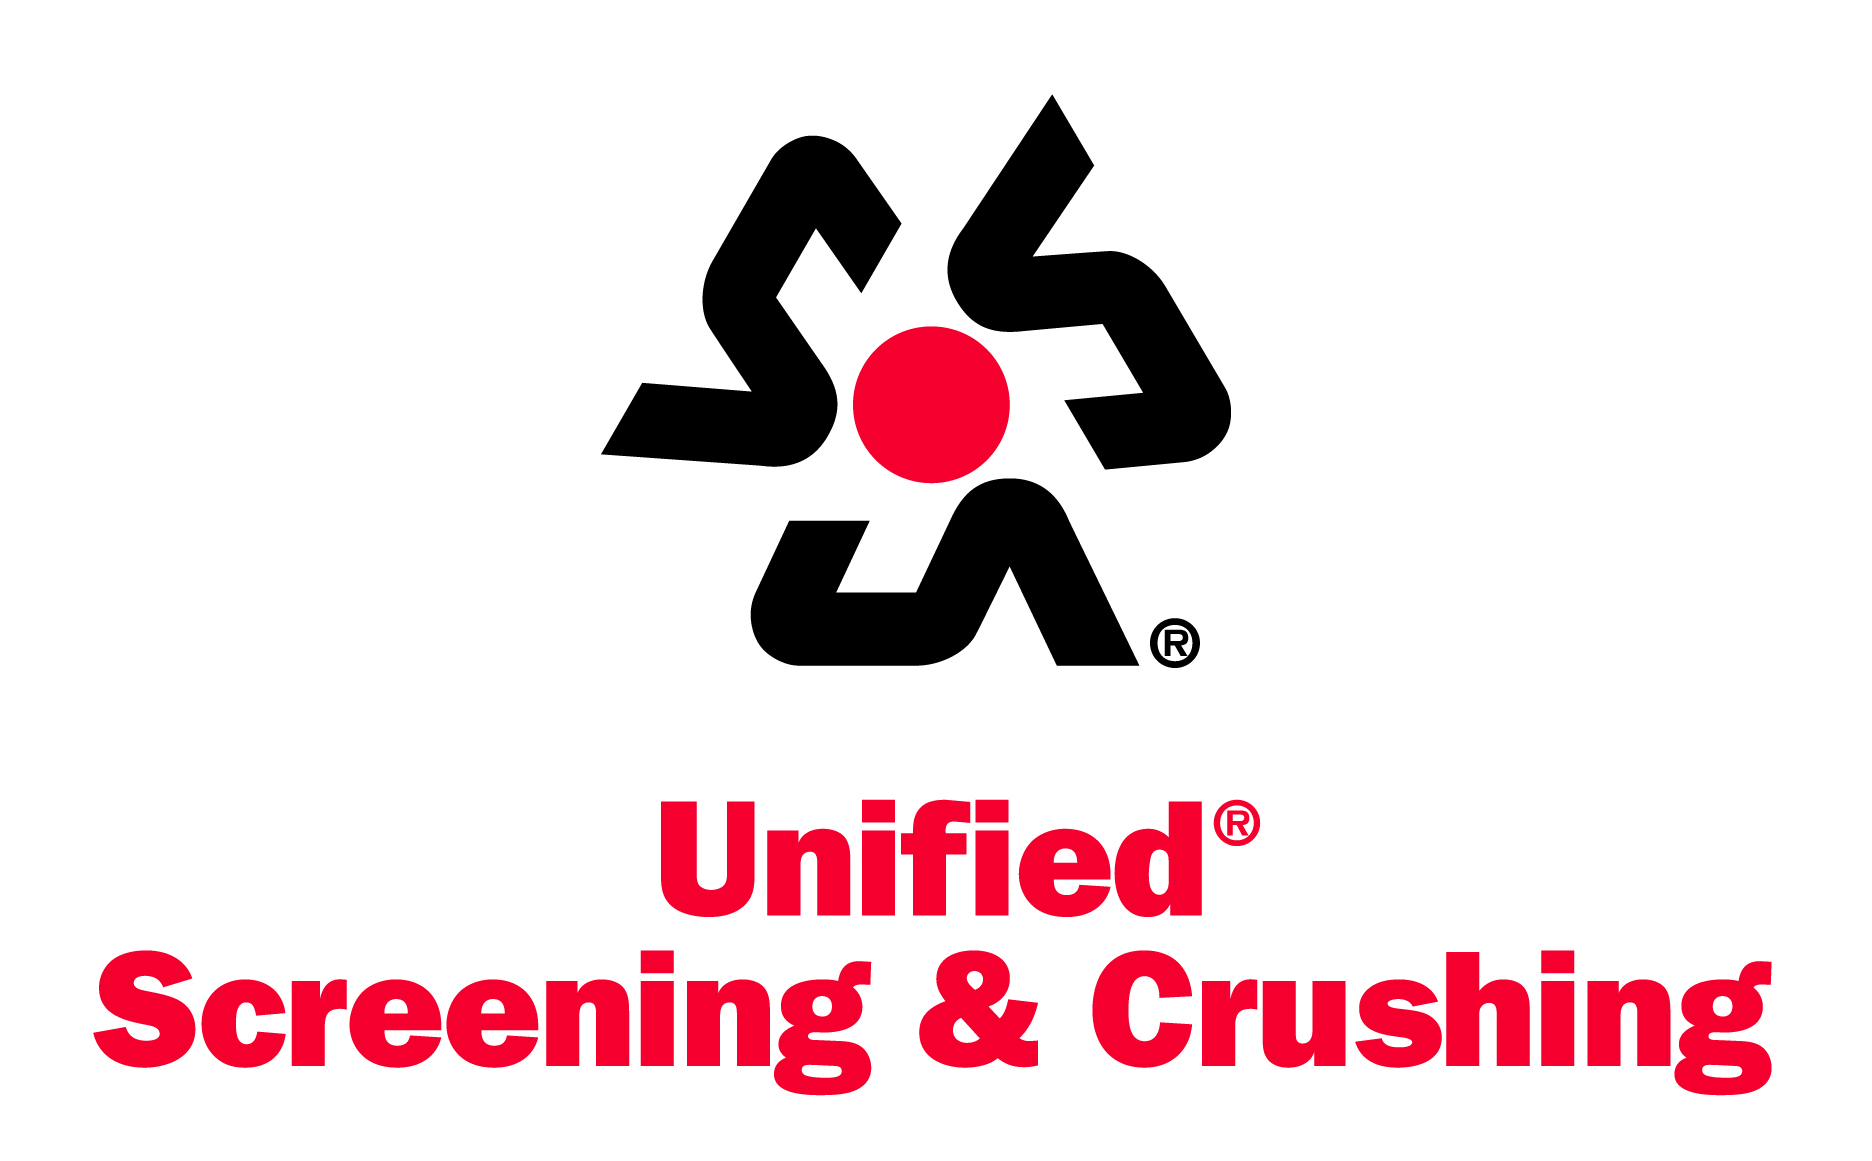 Unified Screening & Crushing